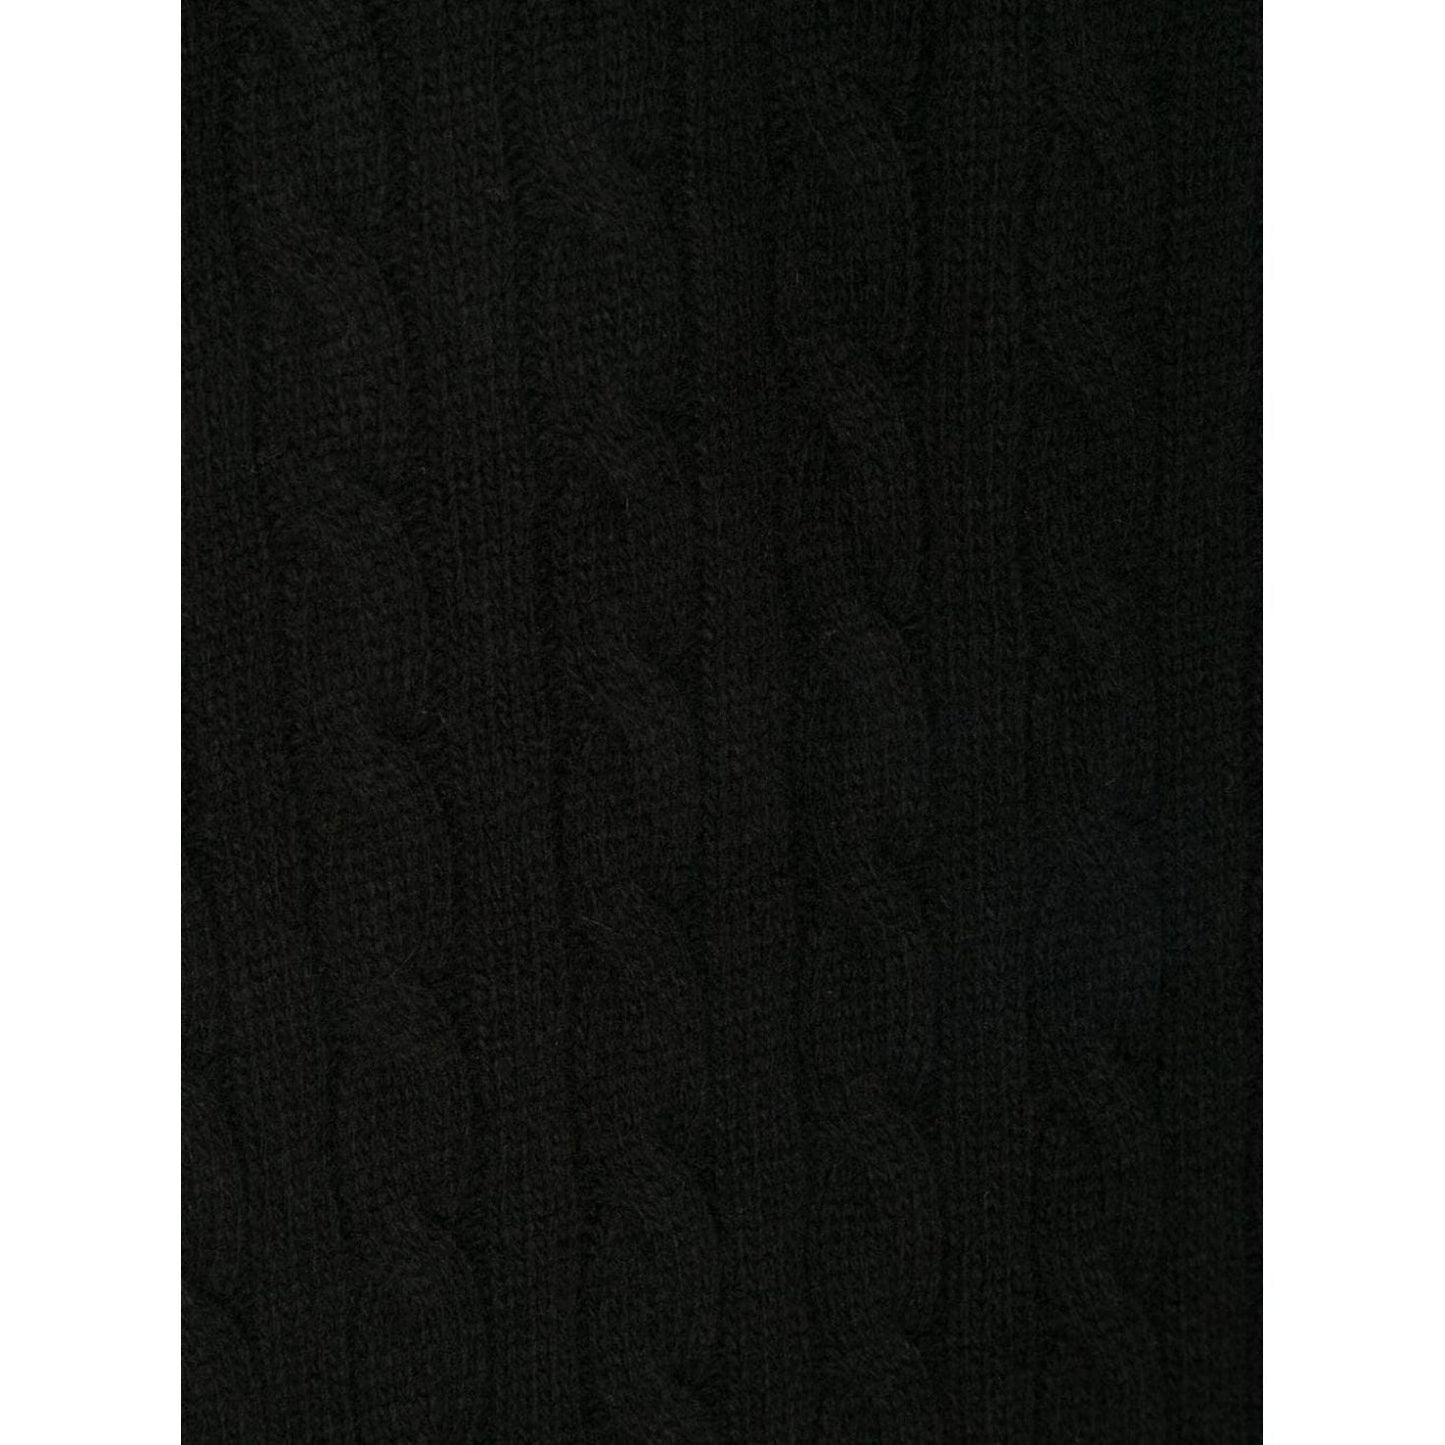 POLO RALPH LAUREN vyriškas juodas šalikas Oblong scarf